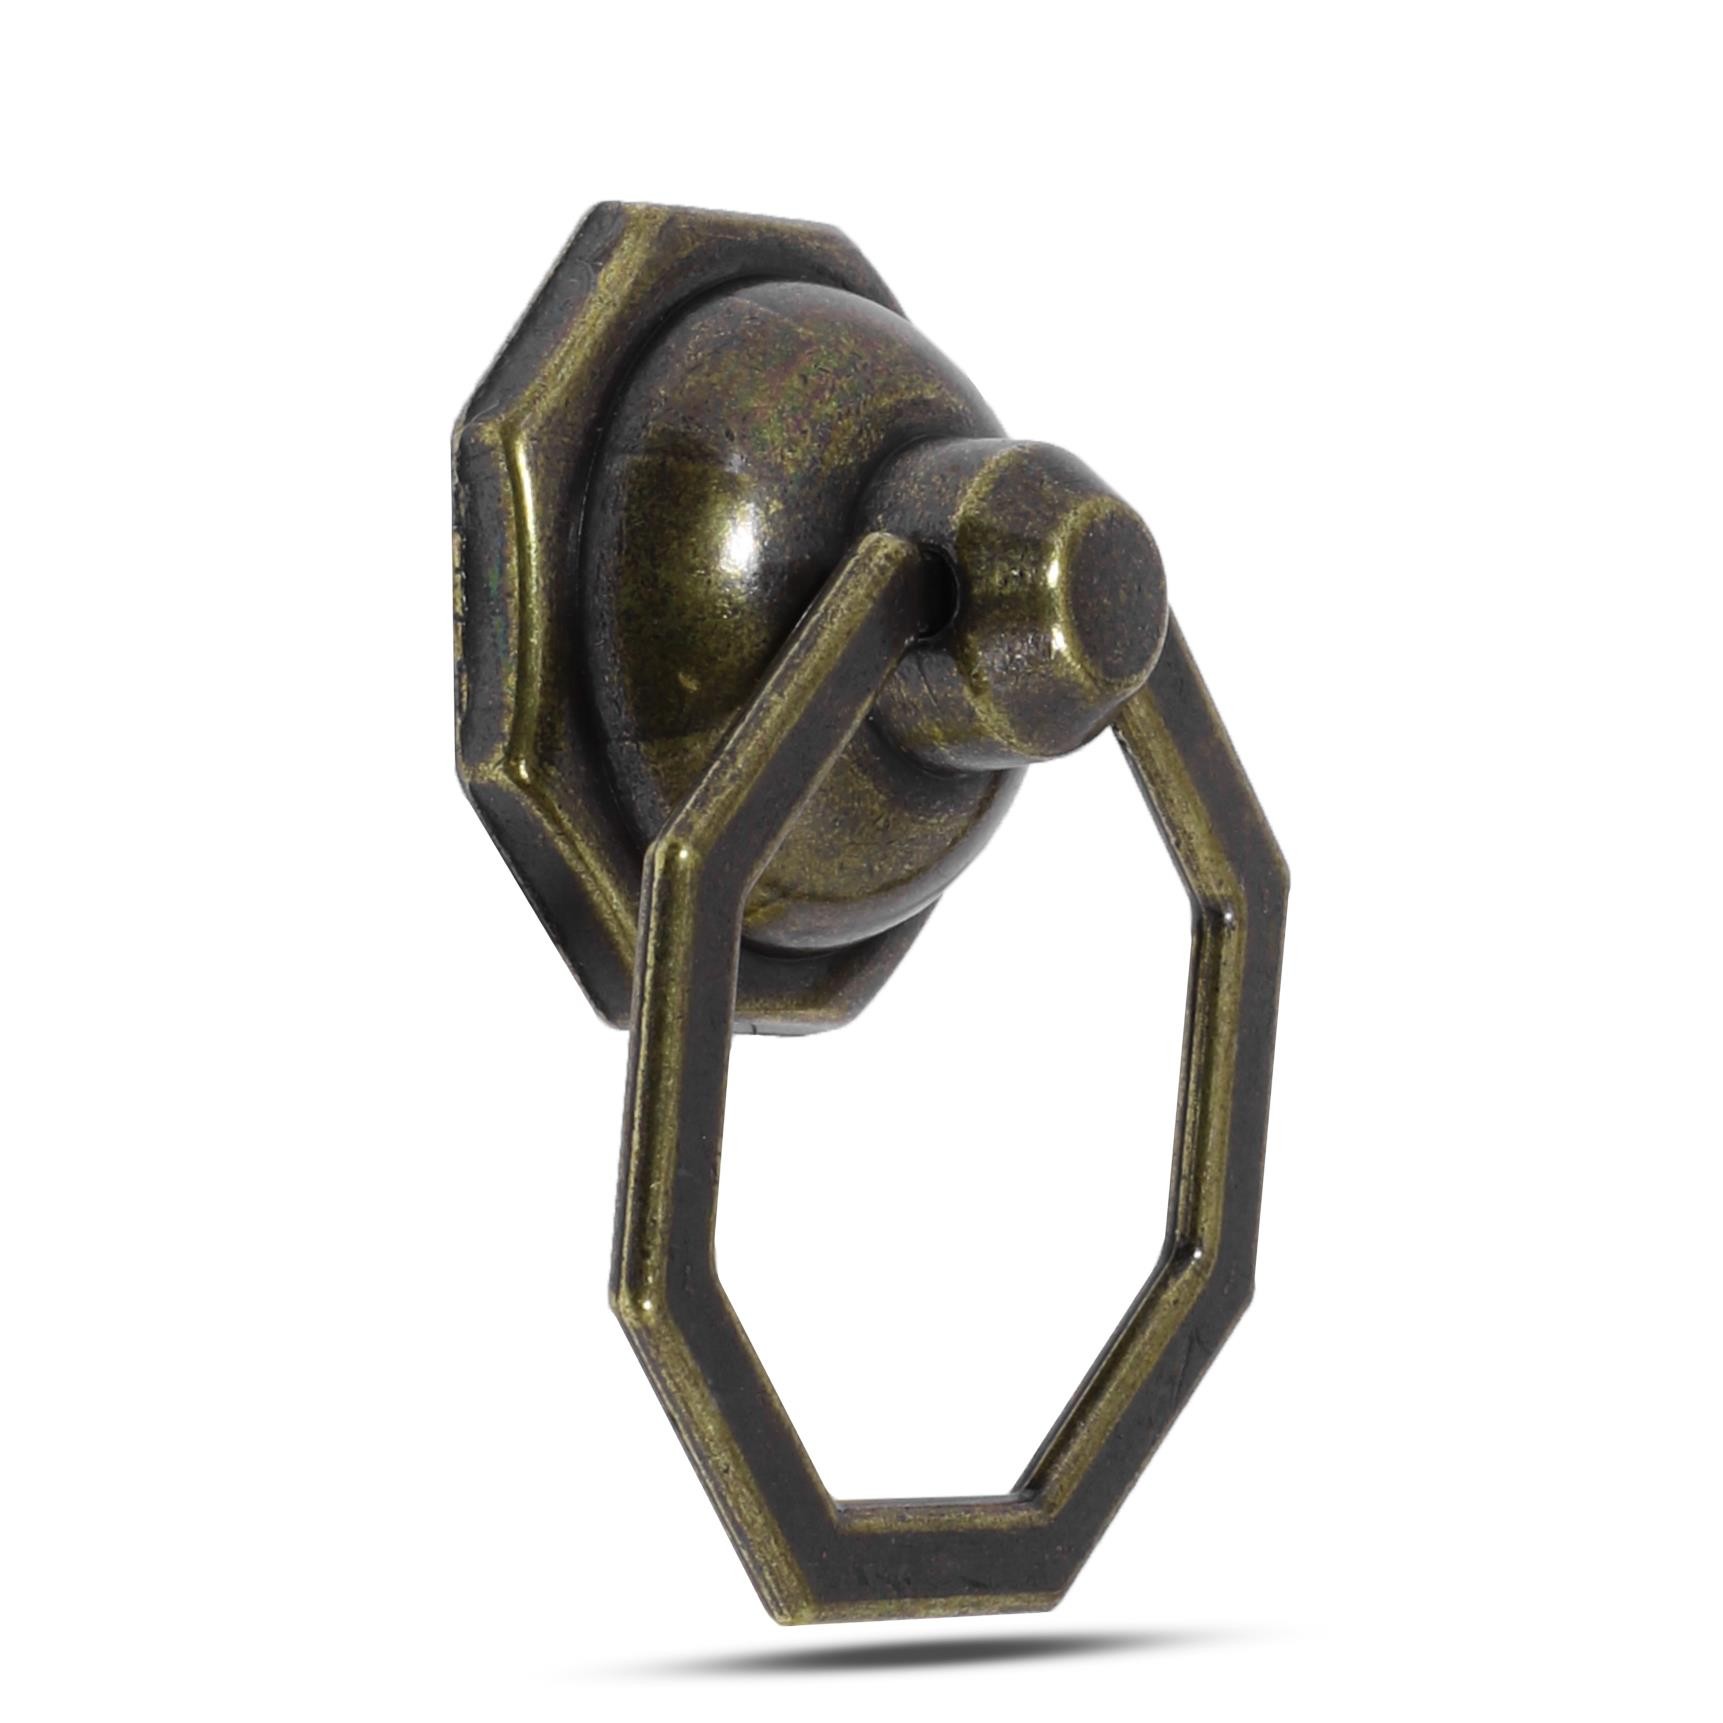 Sarkaç Dolap Çekmece Kulpu Kulbu Sekizgen Metal Antik Halka Kulp (4 ADET)